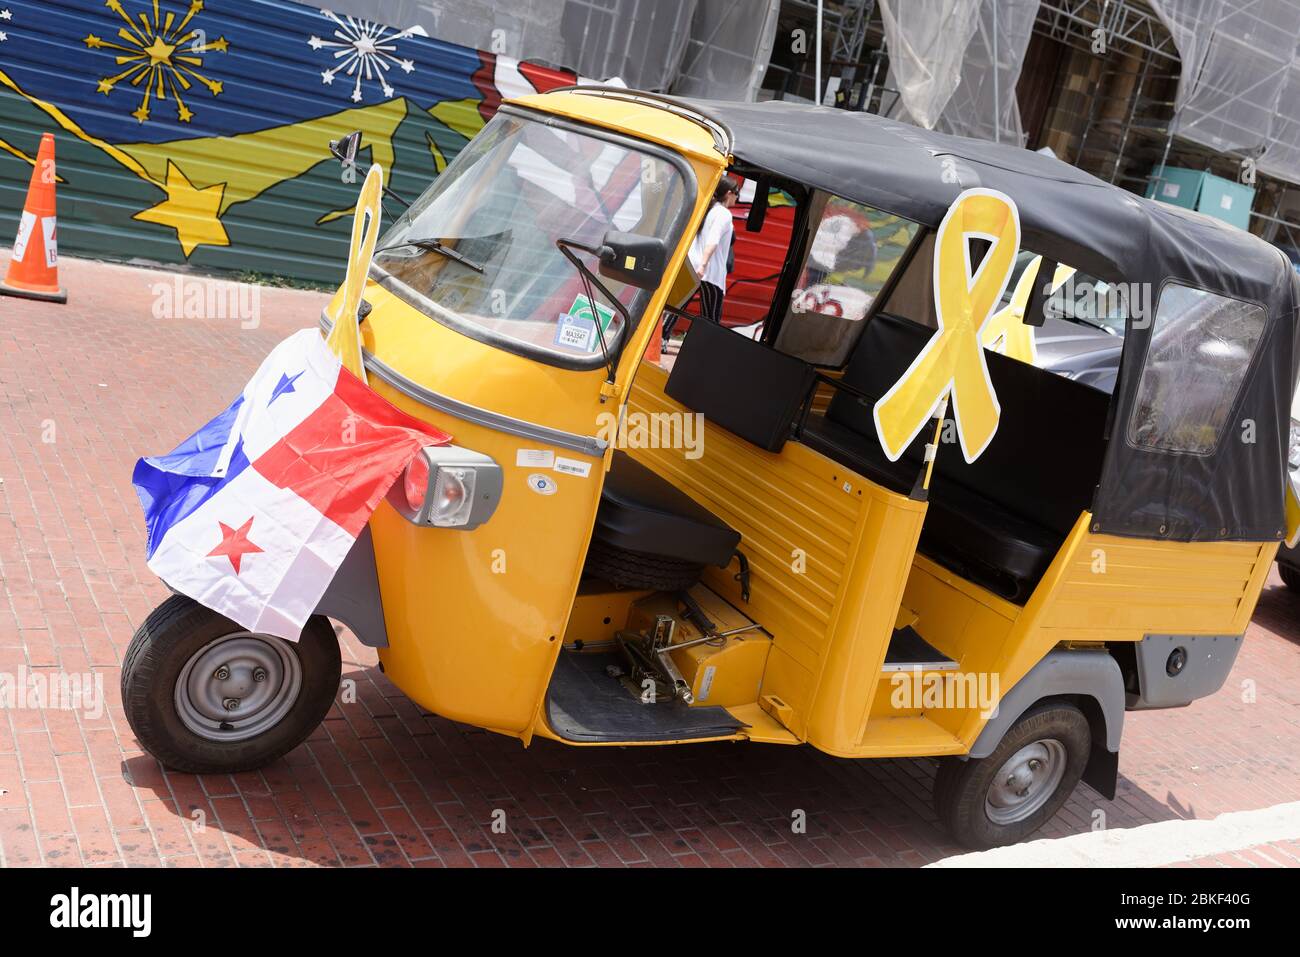 Ein Tut-tut-Taxi mit der Flagge von Panama, in der Altstadt, Panama City, Mittelamerika und einem gelben Band, das Selbstmordprävention bei jungen Menschen betont. Stockfoto